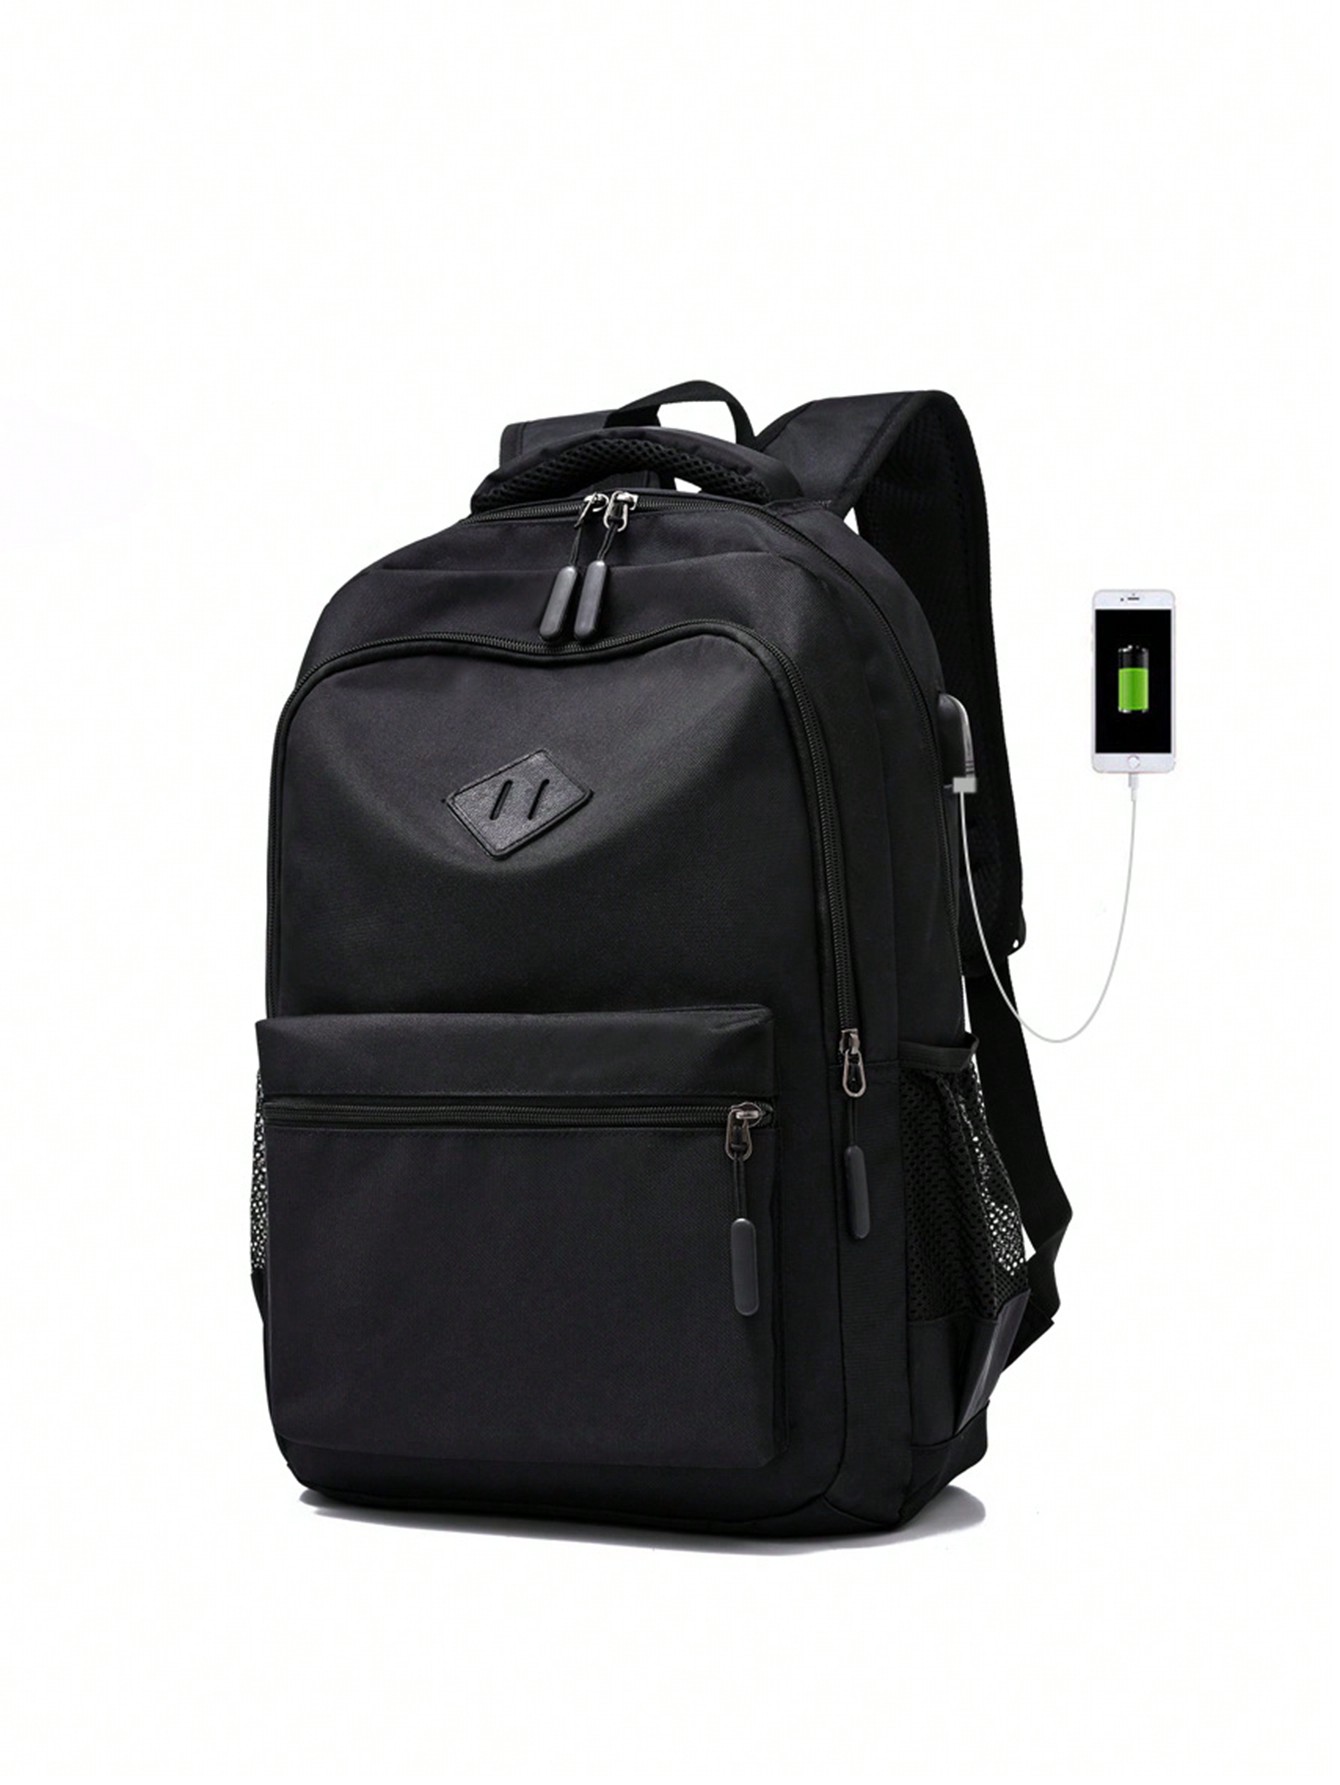 Рюкзак для учащихся средней, черный рюкзак jackherelook apex legends дизайнерский школьный ранец модная повседневная дорожная сумка для детей дошкольного возраста